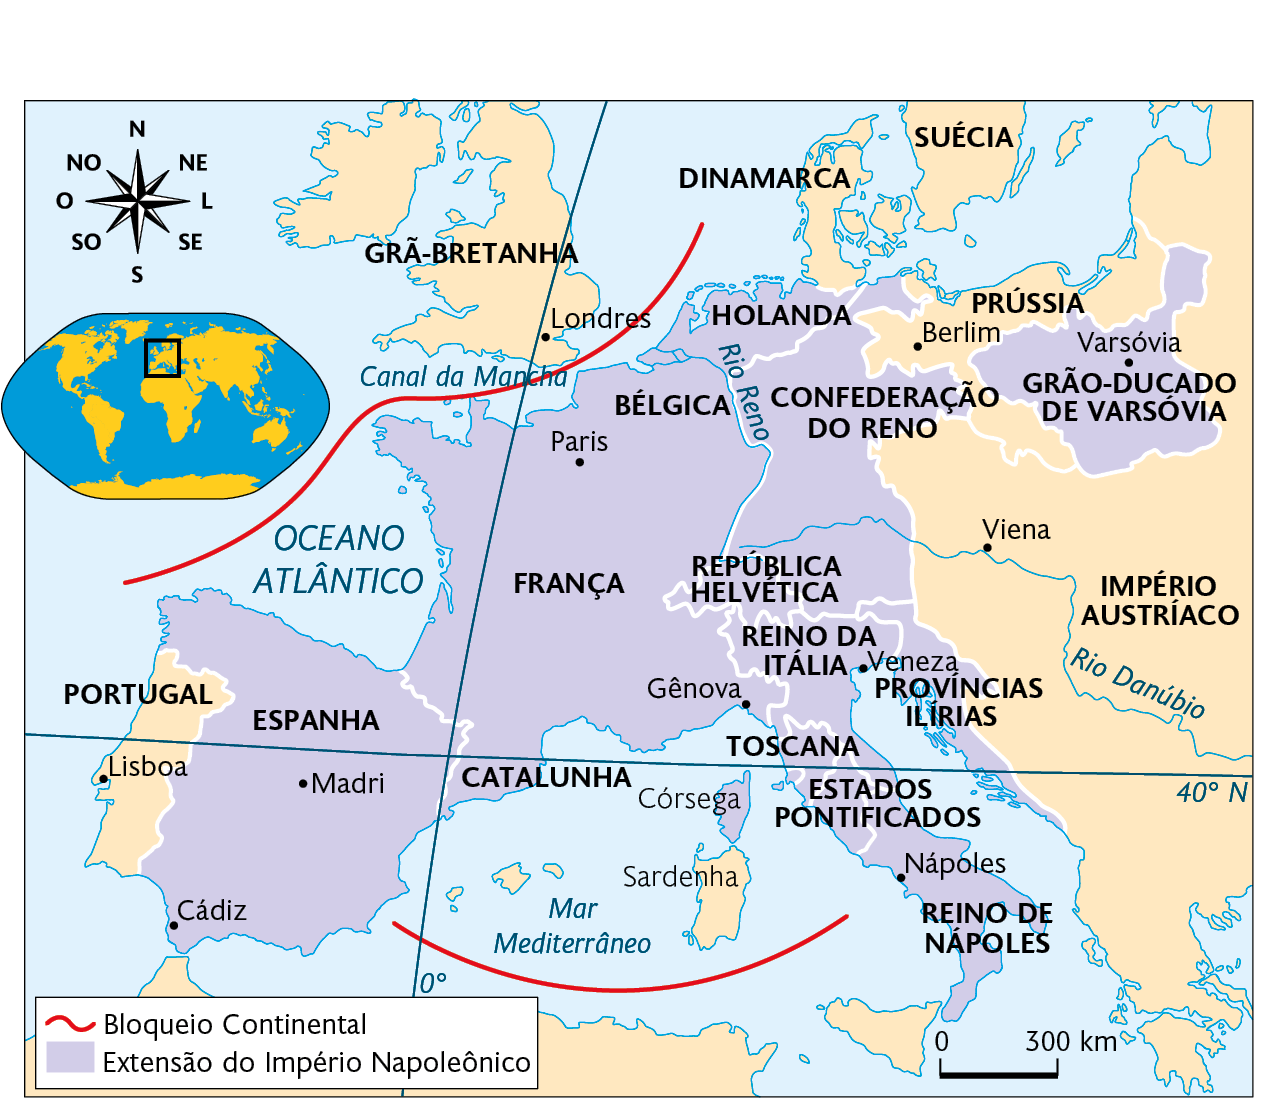 Mapa. O Império Napoleônico (1812). Mapa territorial destacado conforme a legenda: Bloqueio Continental: Faixa vermelha contornando parte da Europa. No norte, a faixa separa a Grã-Bretanha do resto da Europa por meio do Canal da Mancha, no Oceano Atlântico. No sul, a faixa vermelha separa a Europa da África por meio do Mar Mediterrâneo, perto da ilha de Sardenha. Extensão do Império Napoleônico: o território abrange grande parte da Europa, regiões como: Espanha, cidades destacadas: Cádiz e Madri. Catalunha. França, cidades destacadas: Paris e Gênova. Bélgica. Holanda. Confederação do Reno. República Helvética. Reino da Itália, cidade destacada: Veneza. Toscana. Ilha de Córsega. Estados Pontificados. Reino de Nápoles, cidade destacada: Nápoles. Províncias Ilírias. Grão-Ducado de Varsóvia, cidade destacada: Varsóvia. A Ilha de Sardenha, no Mar Mediterrâneo; Portugal, cidade destacada: Lisboa; Grã-Bretanha, cidade destacada: Londres; Dinamarca; Suécia; Prússia, cidade destacada: Berlim; Império Austríaco, cidade destacada: Viena, são regiões não dominadas pelo Império Napoleônico. Na parte superior, o planisfério destacando parte da Europa e África. Acima, representação da rosa dos ventos e, abaixo, escala de 300 quilômetros por centímetro.